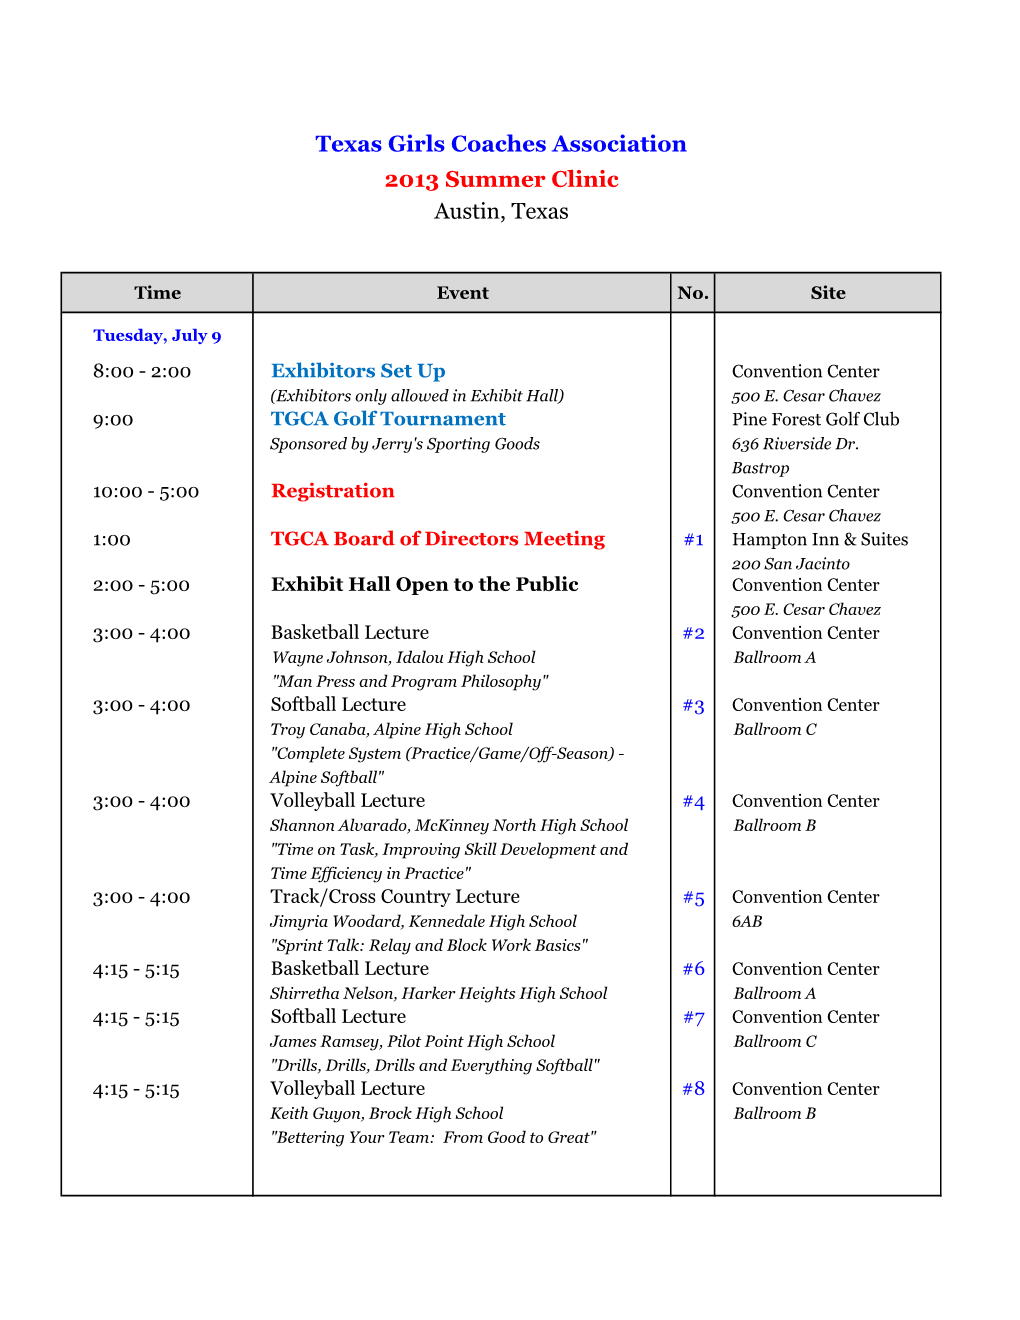 2013 Clinic Schedule